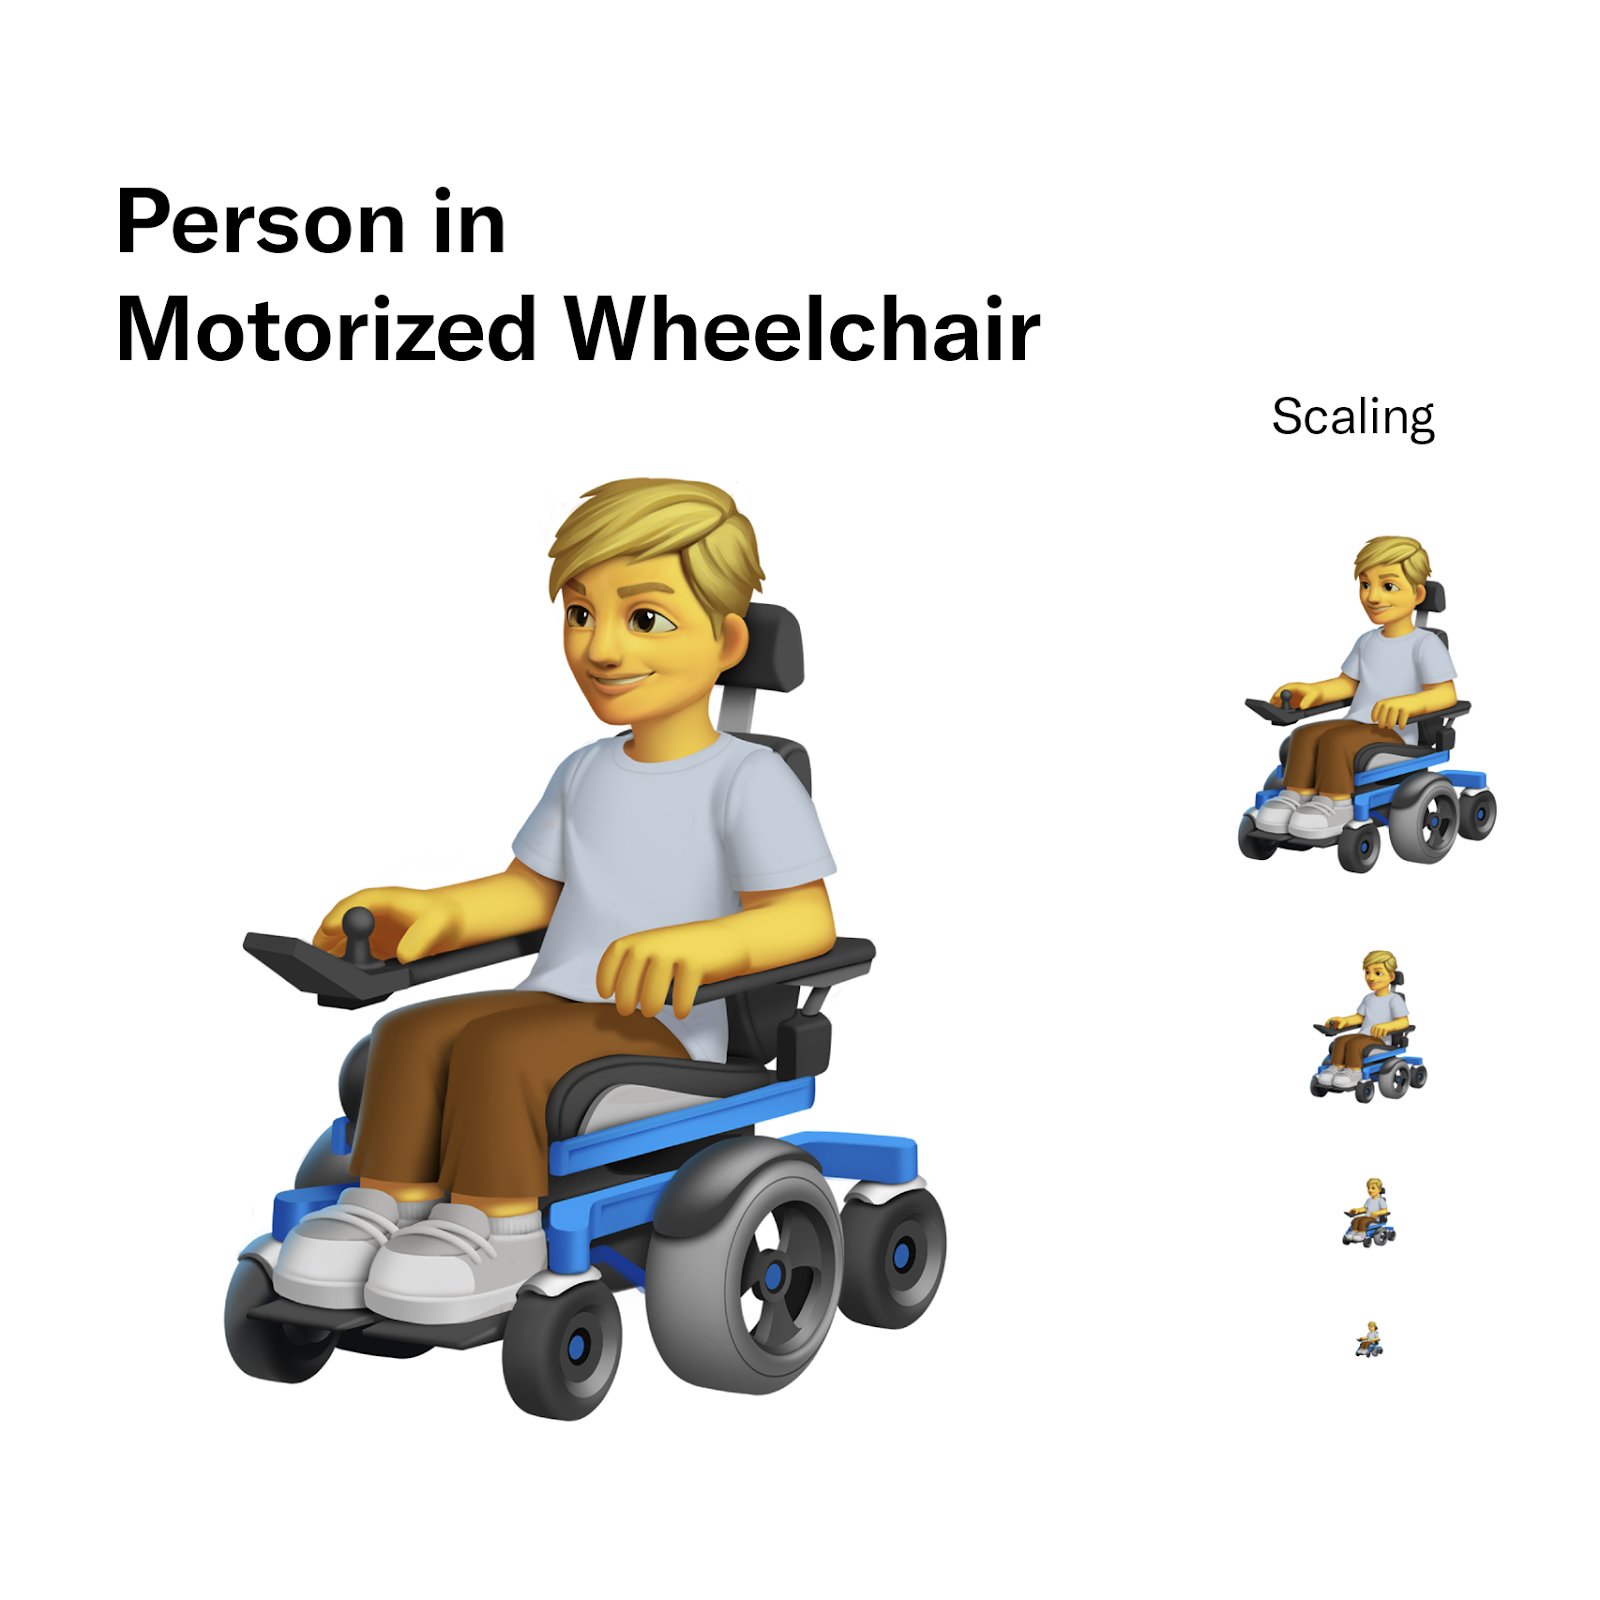 Les propositions d'emoji pour illustrer le handicap // Source : Twitter Design